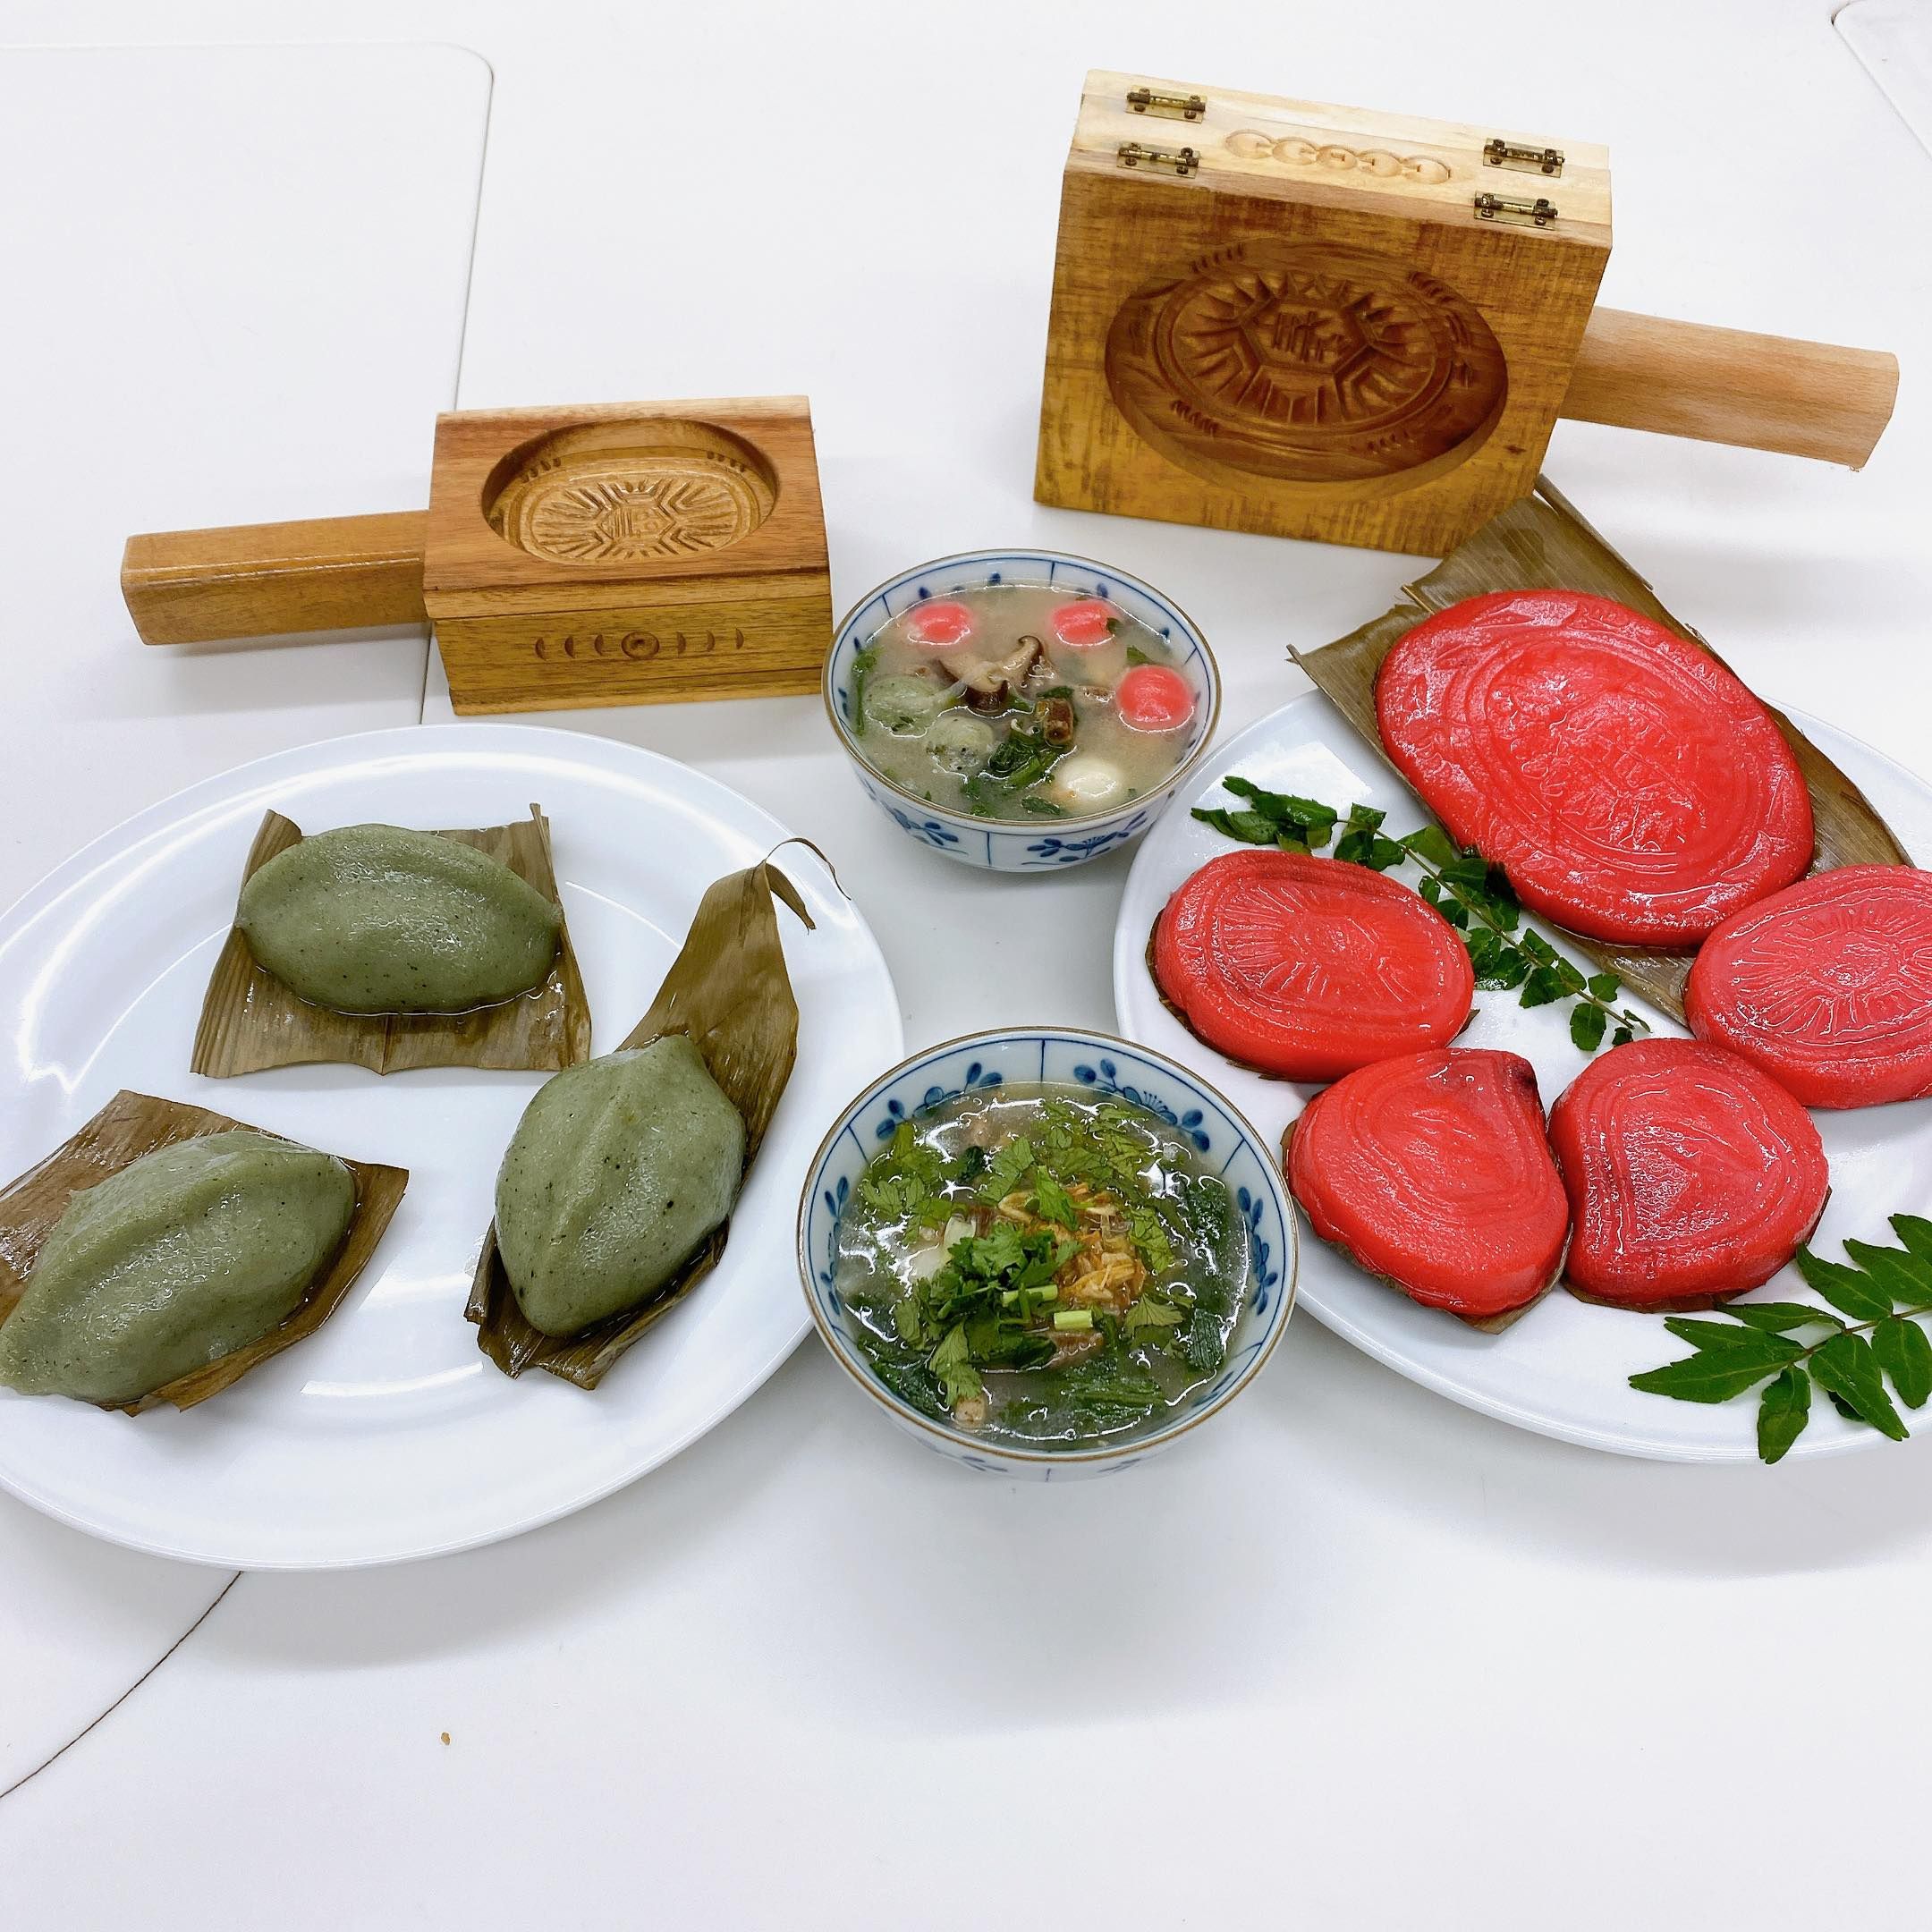 老師示範的美味的紅龜粿(客家紅粄)和草仔粿(客家豬籠粄)、客家鹹湯圓